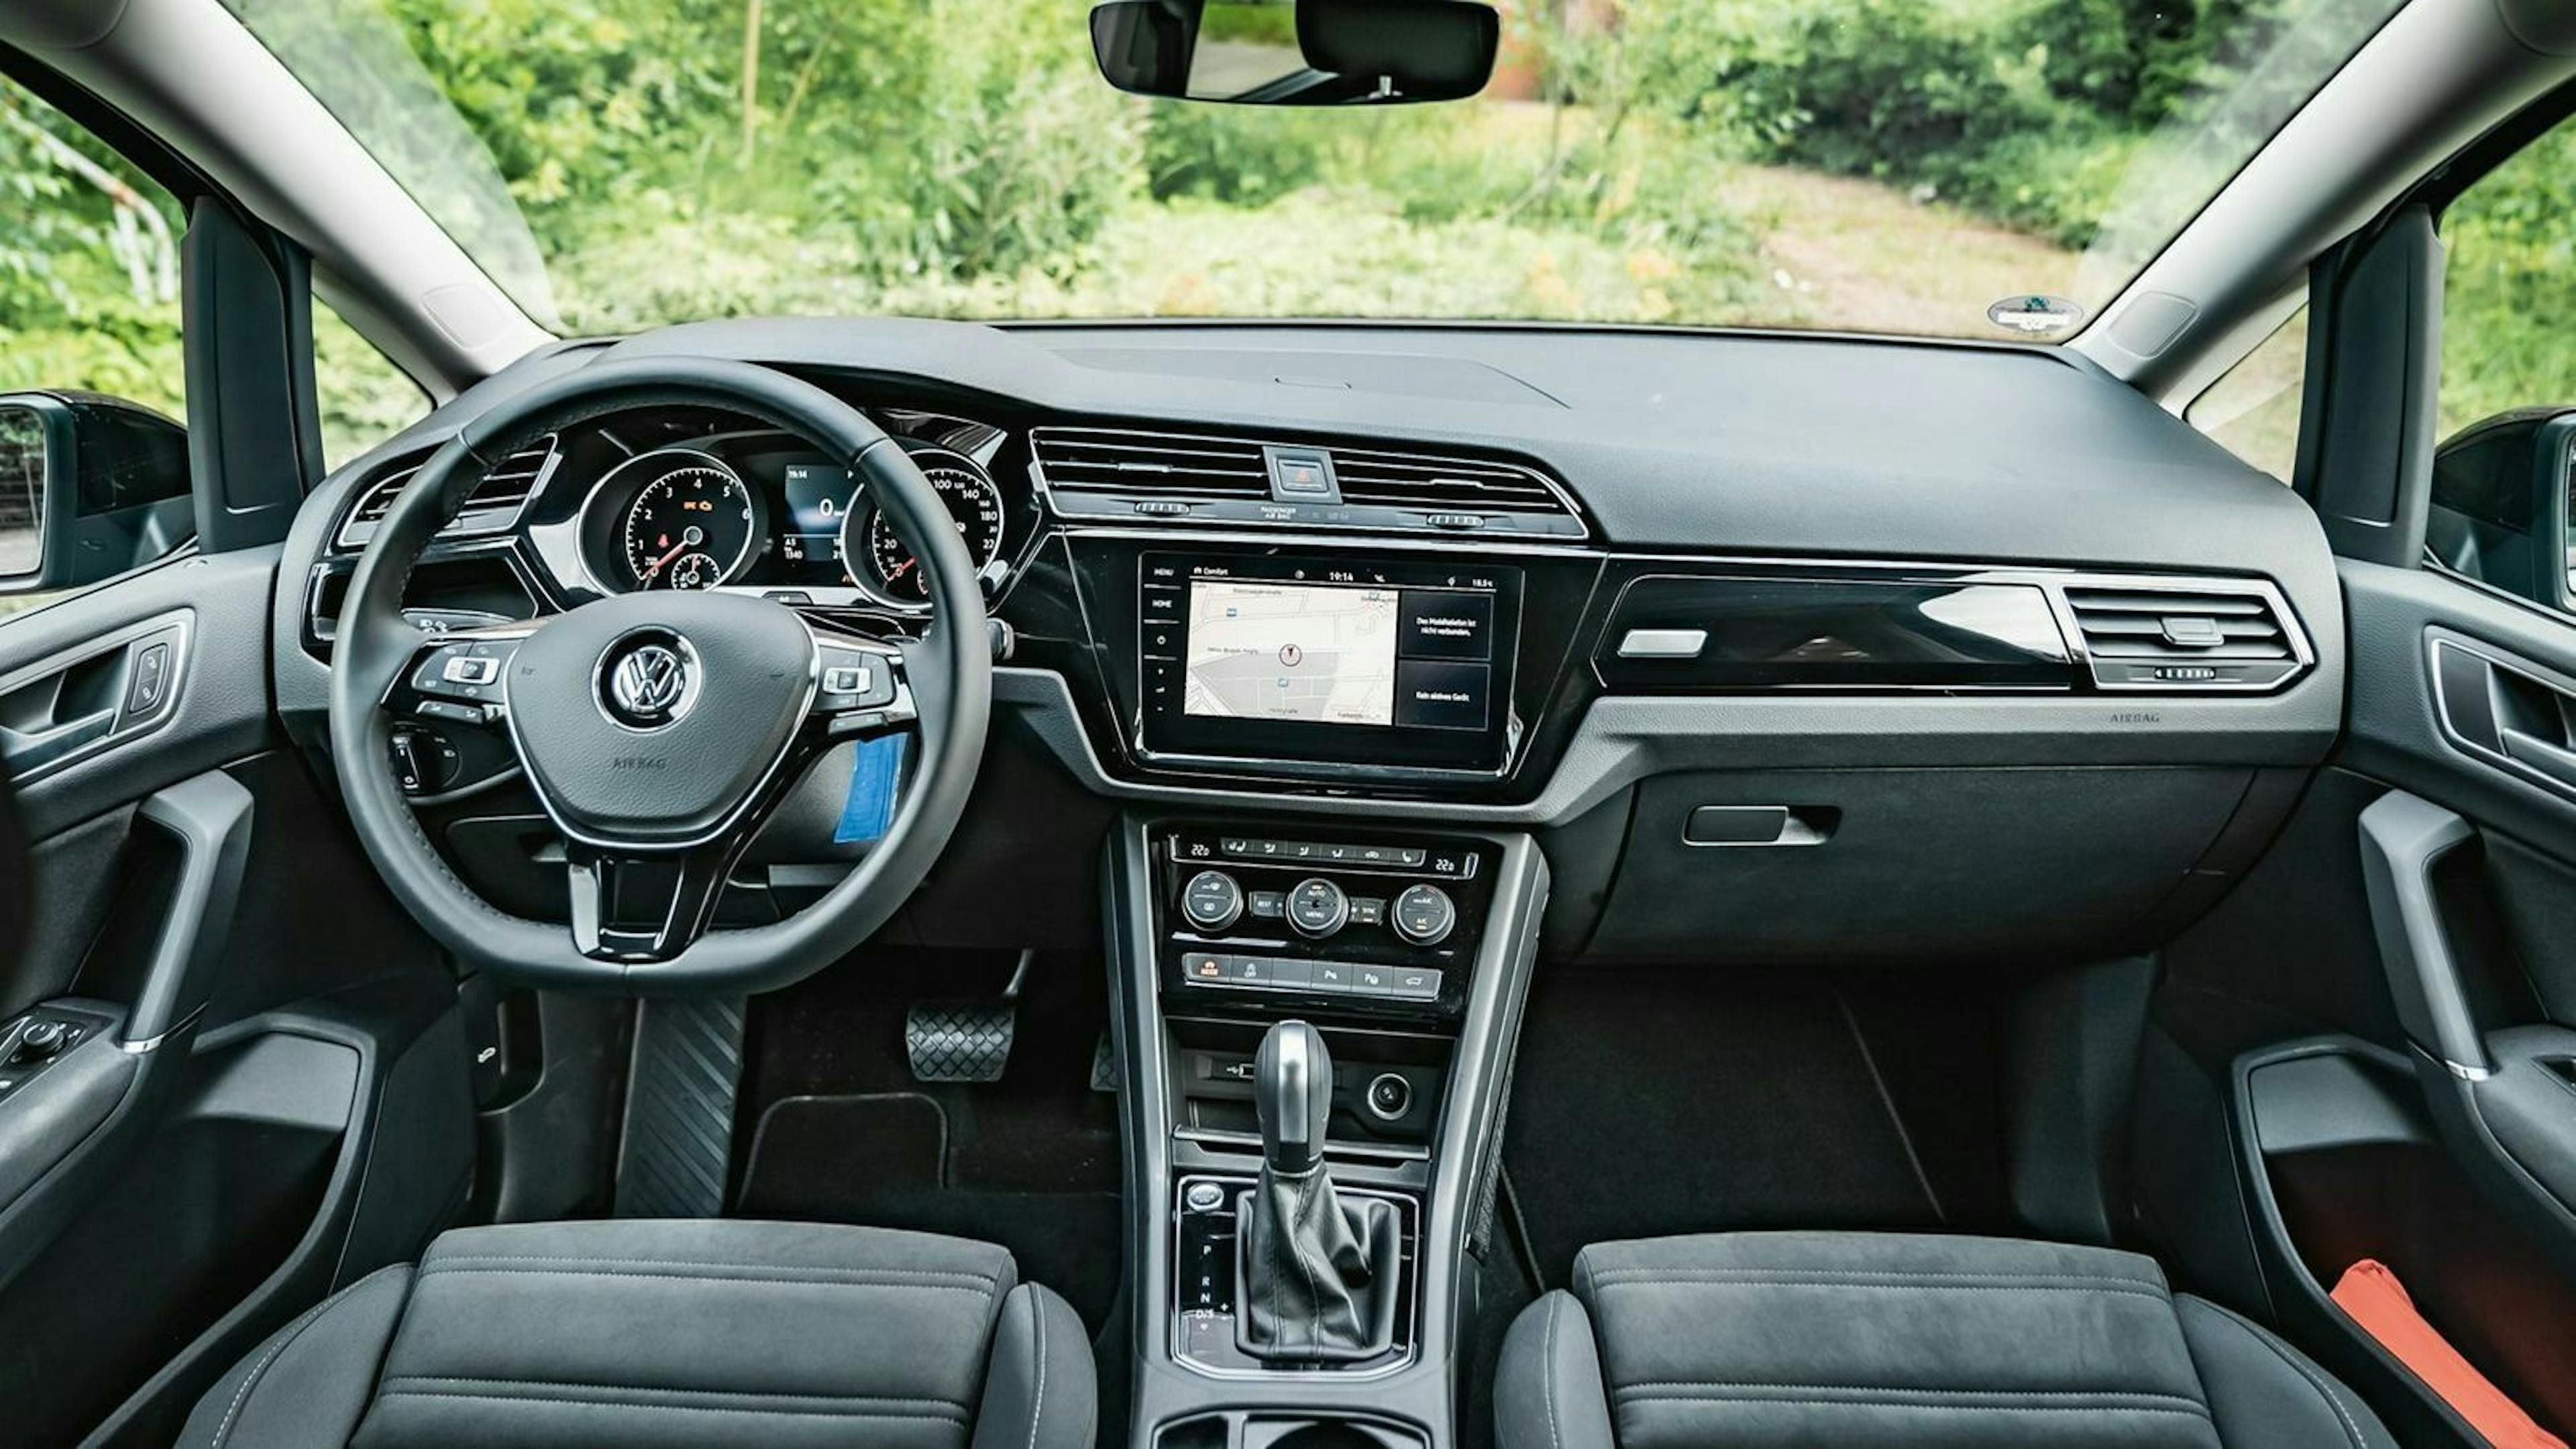 Zu sehen ist das Cockpit des VW Touran